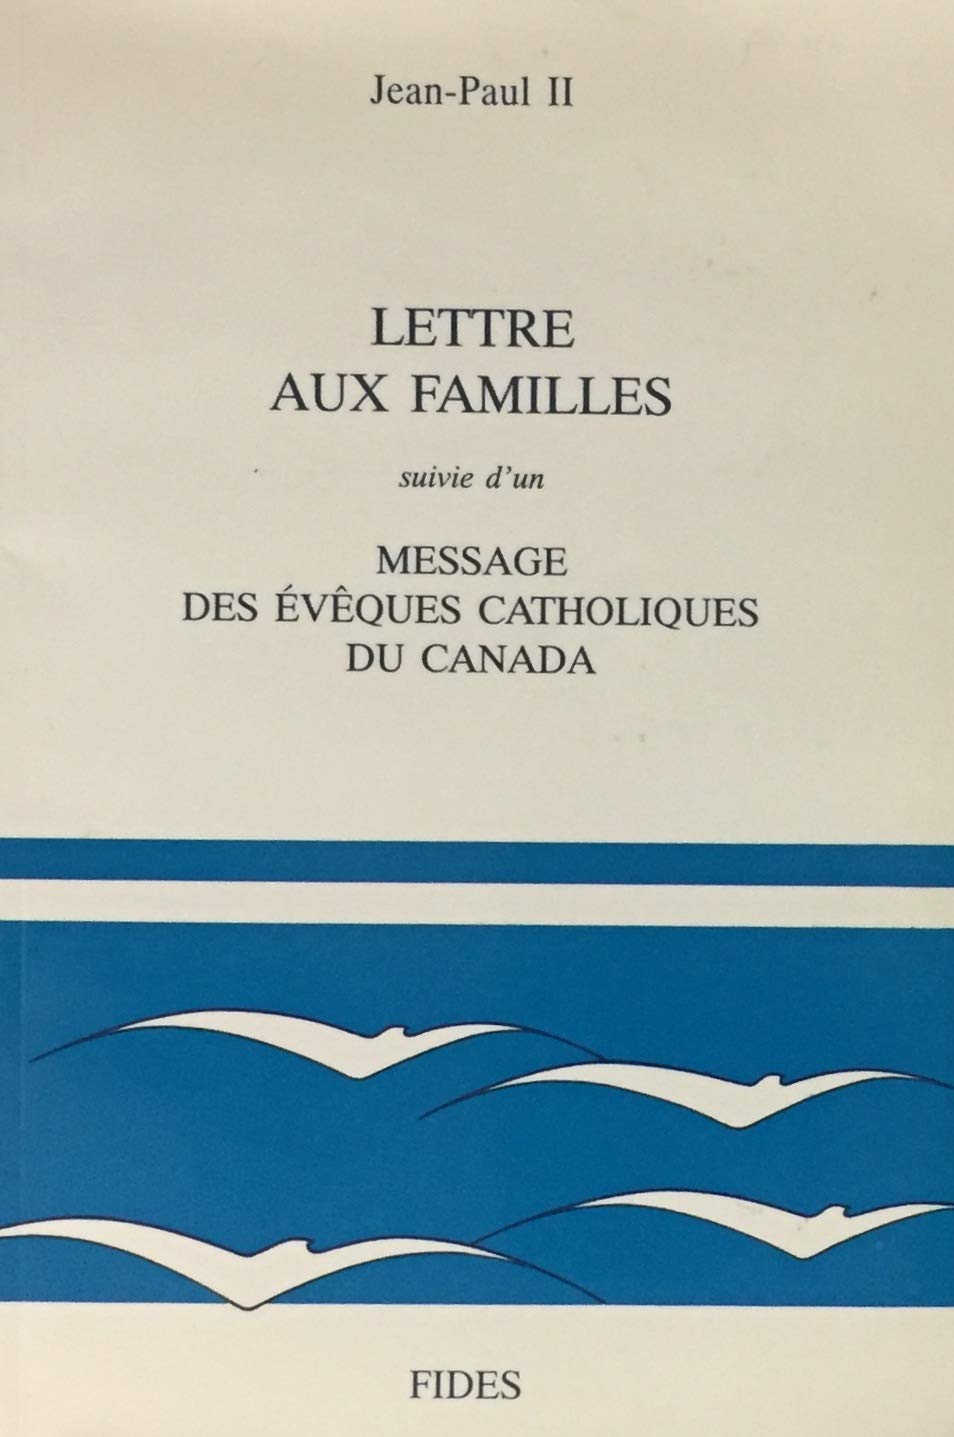 Livre ISBN 2762117232 Lettre aux familles - suivi de - Message des évèques catholiques du Canada (Jean-Paul II)